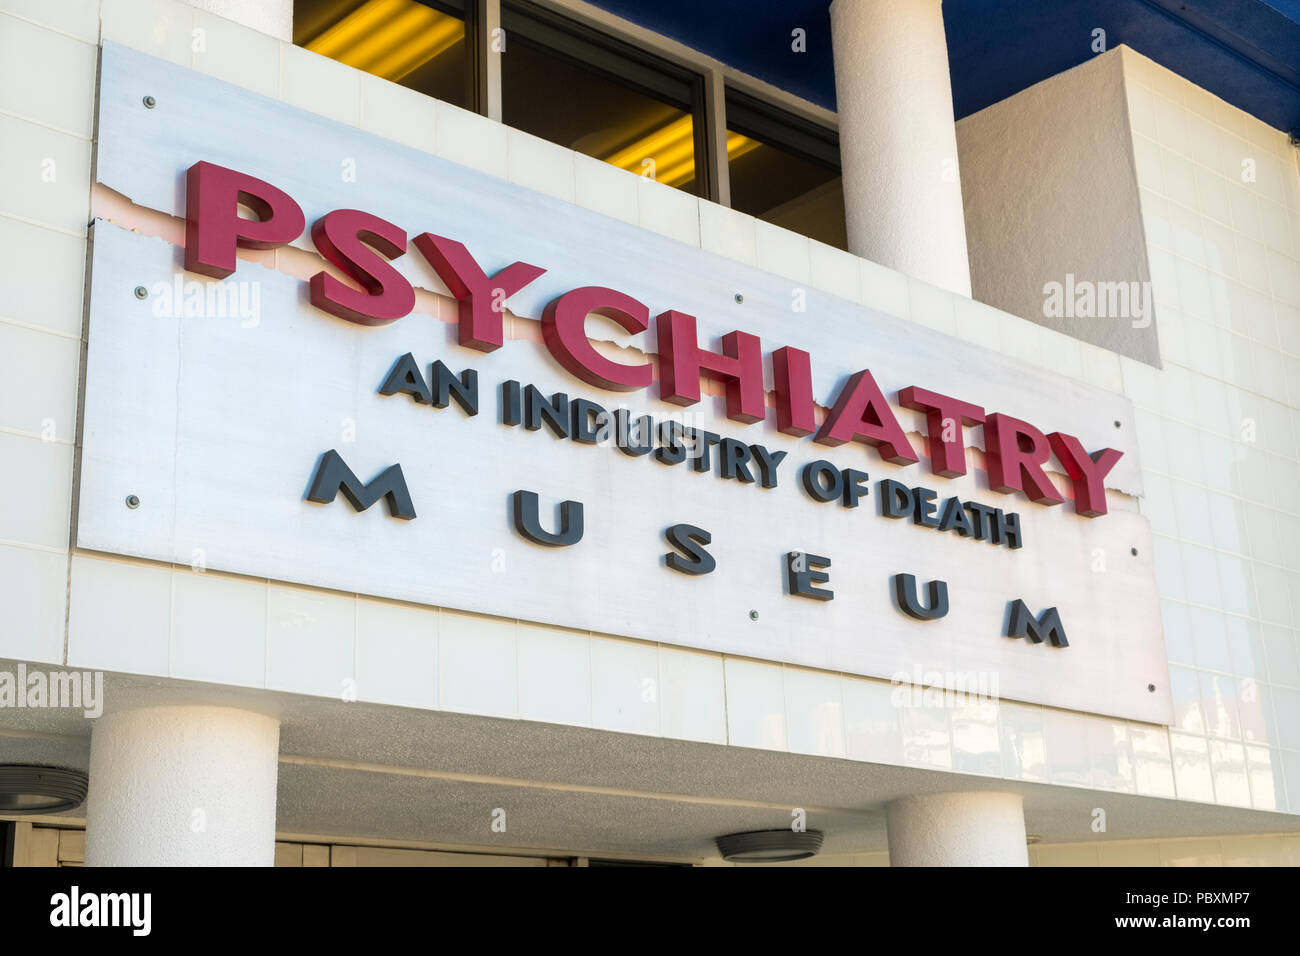 Psychiatrie une industrie de la mort museum, Hollywood, Los Angeles, Californie, LA, CA,USA, logo sign Banque D'Images